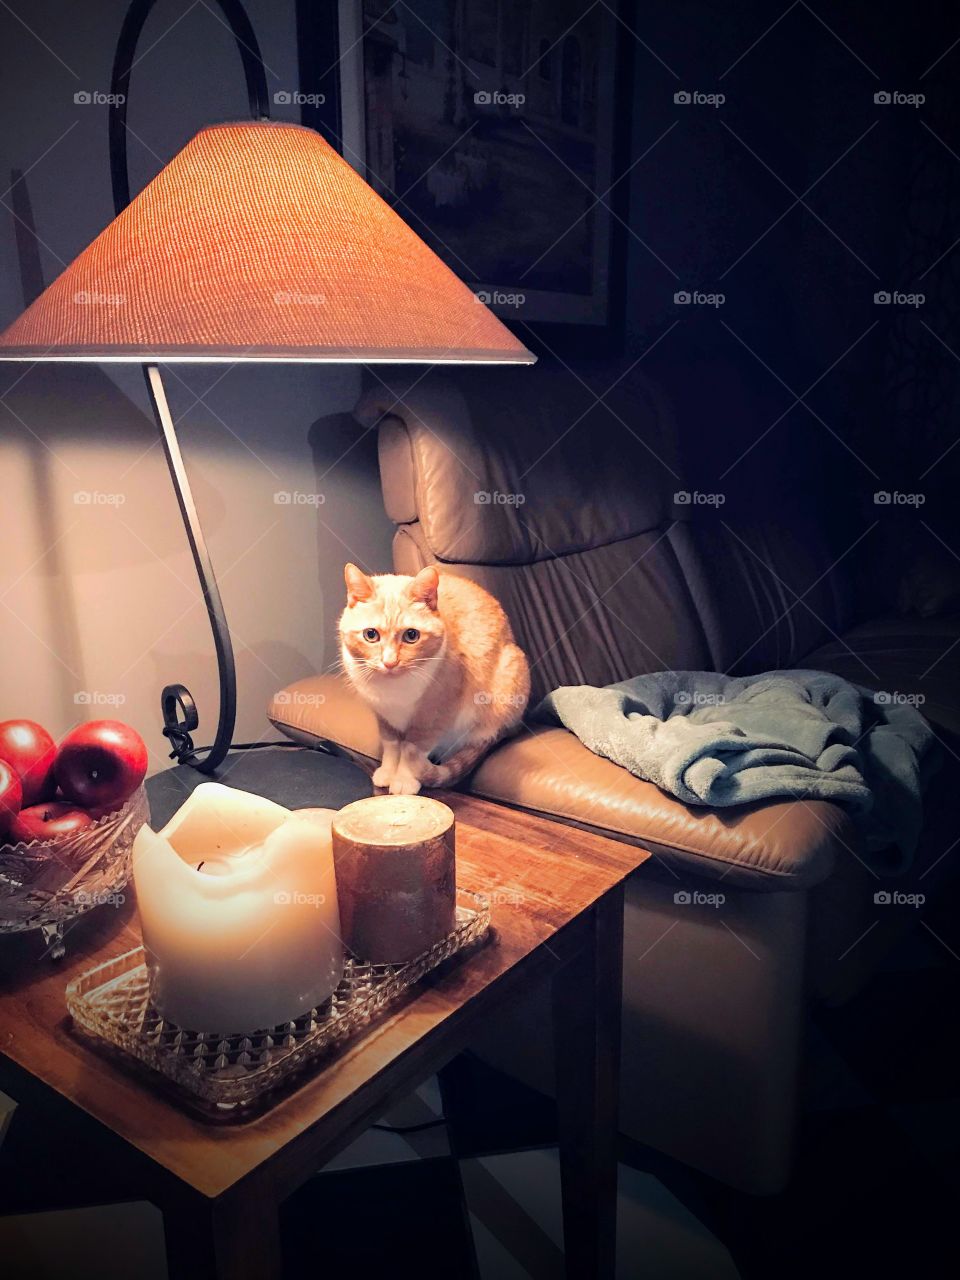 Cat under tablet light 